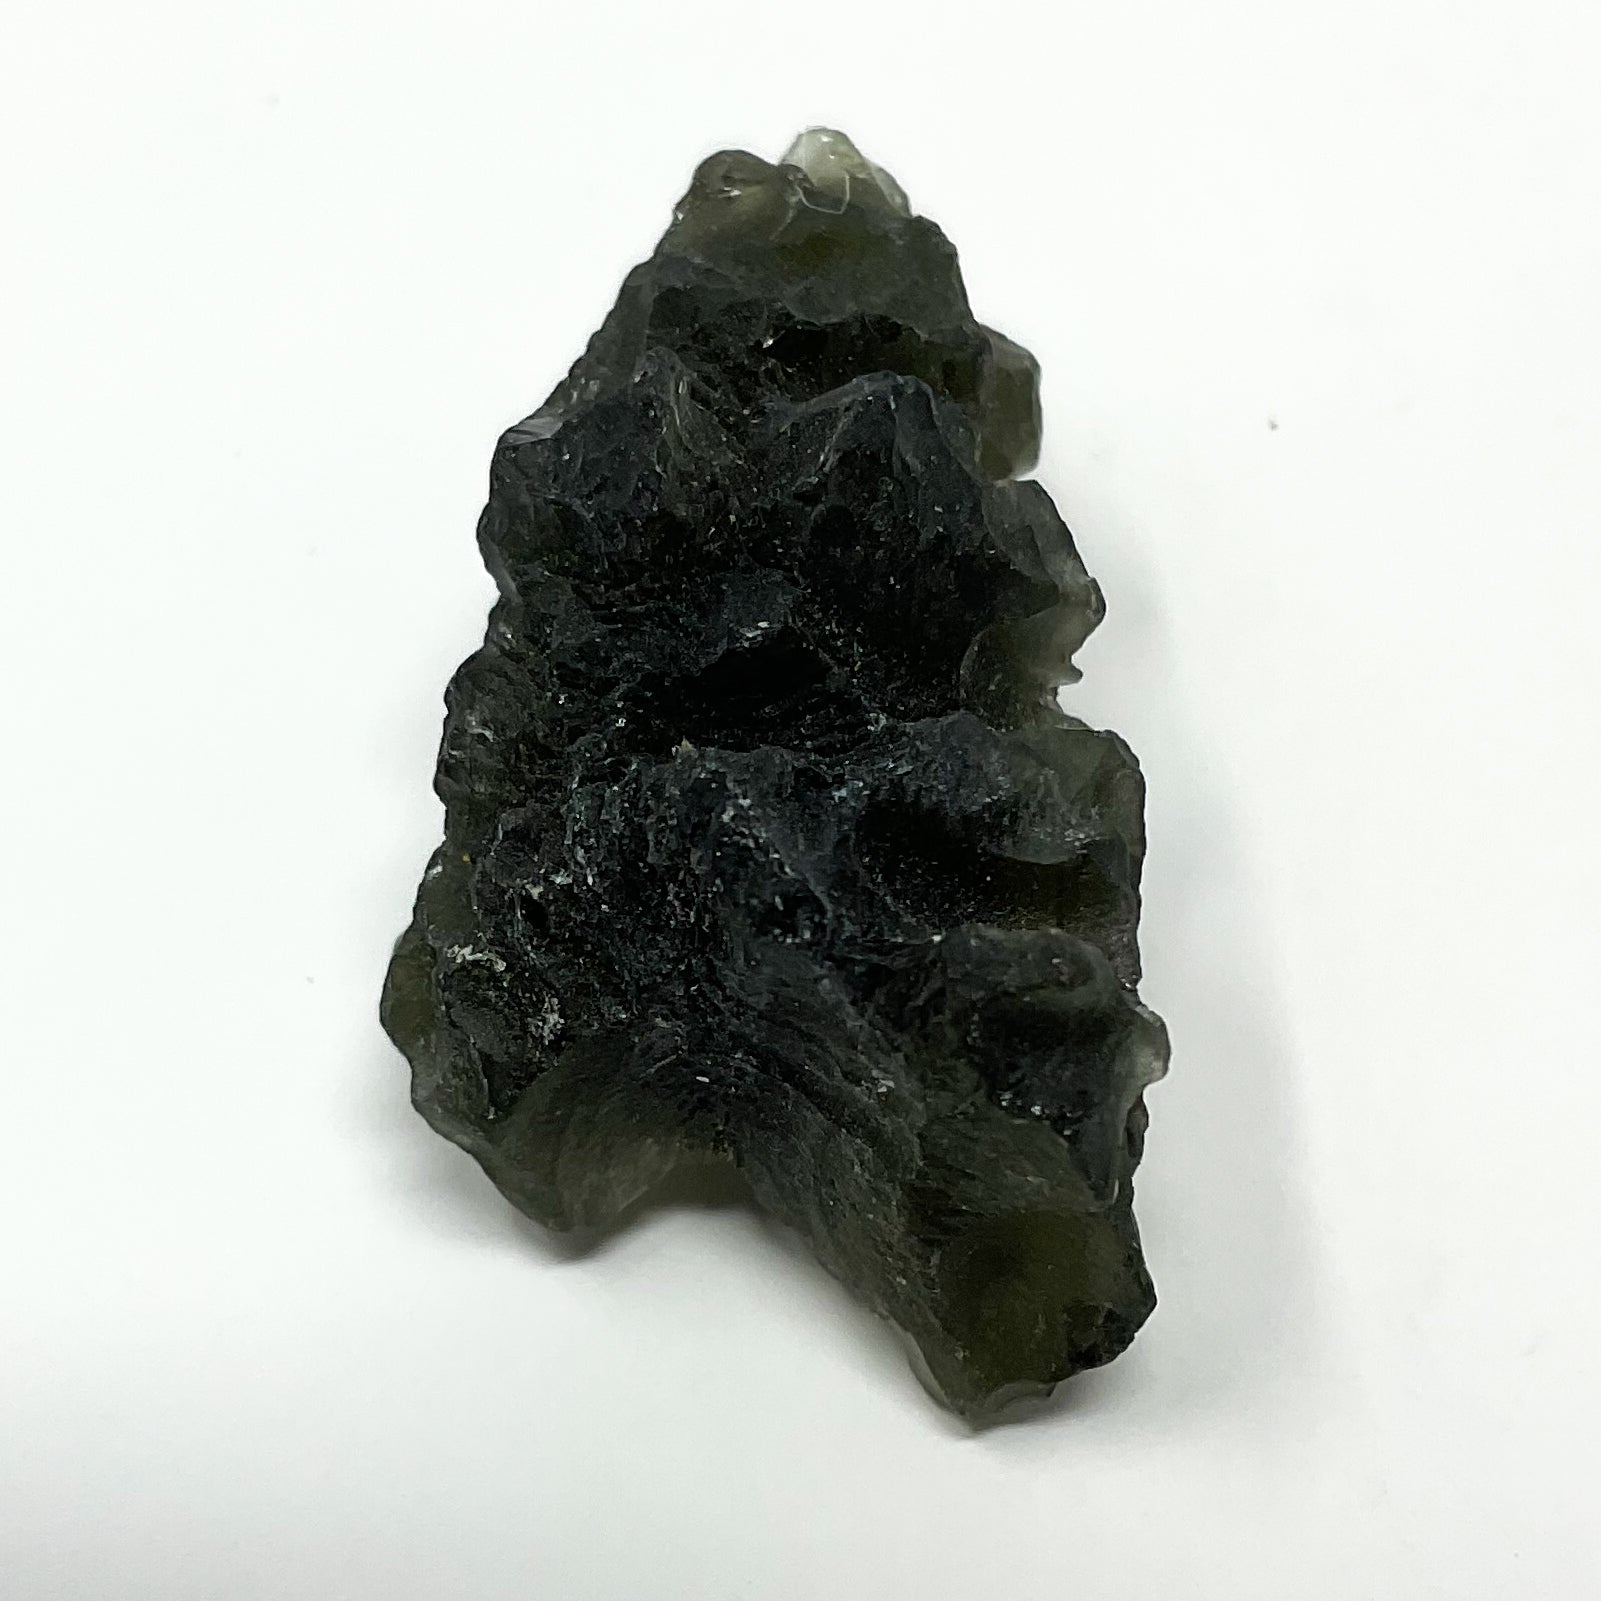 Moldavite from the Czech Republic